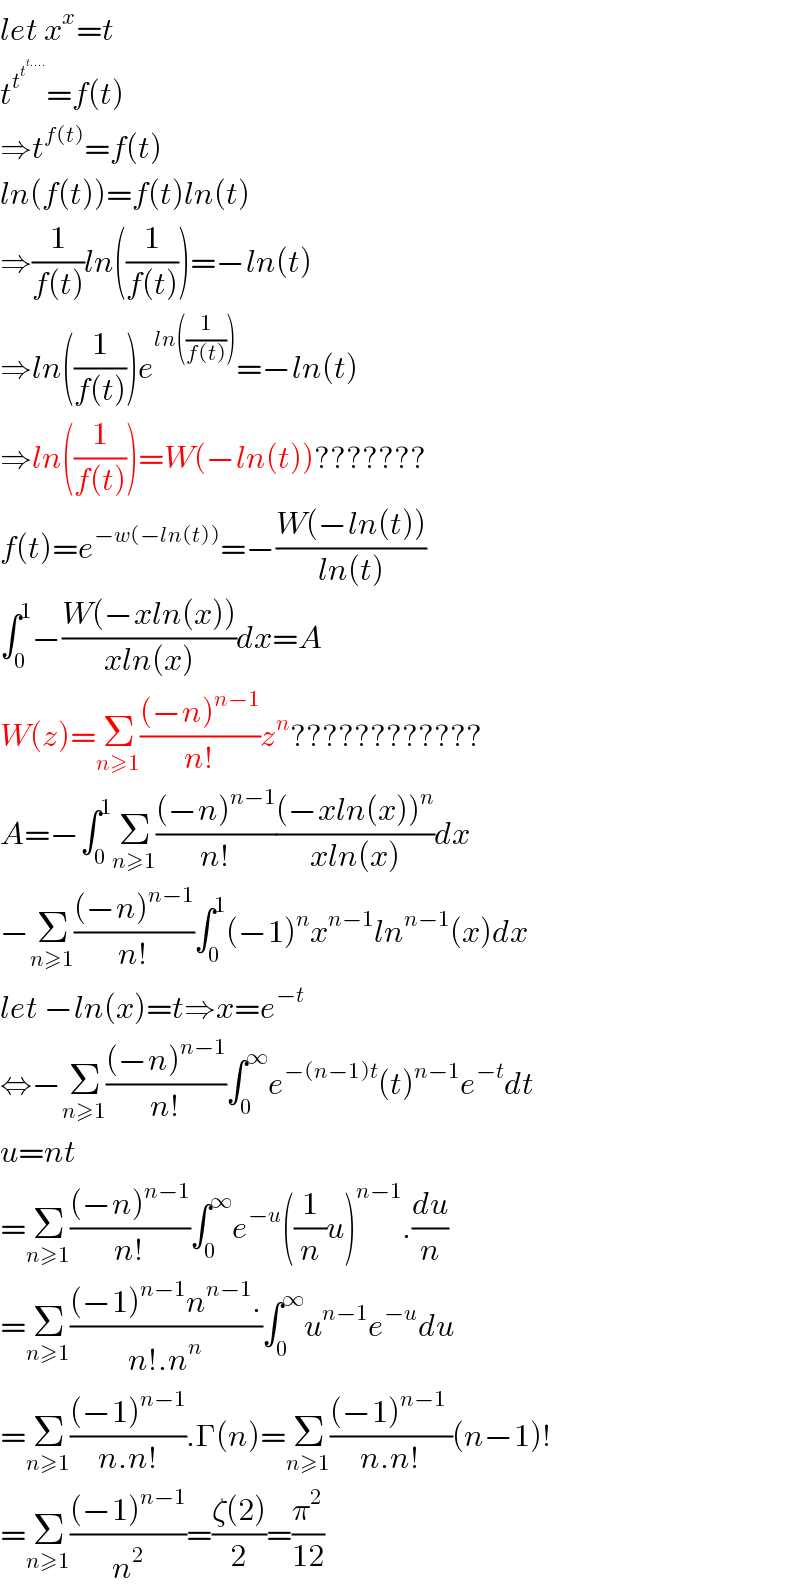 let x^x =t  t^t^t^(t....)   =f(t)  ⇒t^(f(t)) =f(t)  ln(f(t))=f(t)ln(t)  ⇒(1/(f(t)))ln((1/(f(t))))=−ln(t)  ⇒ln((1/(f(t))))e^(ln((1/(f(t))))) =−ln(t)  ⇒ln((1/(f(t))))=W(−ln(t))???????  f(t)=e^(−w(−ln(t))) =−((W(−ln(t)))/(ln(t)))  ∫_0 ^1 −((W(−xln(x)))/(xln(x)))dx=A  W(z)=Σ_(n≥1) (((−n)^(n−1) )/(n!))z^n ????????????  A=−∫_0 ^1 Σ_(n≥1) (((−n)^(n−1) )/(n!))(((−xln(x))^n )/(xln(x)))dx  −Σ_(n≥1) (((−n)^(n−1) )/(n!))∫_0 ^1 (−1)^n x^(n−1) ln^(n−1) (x)dx  let −ln(x)=t⇒x=e^(−t)   ⇔−Σ_(n≥1) (((−n)^(n−1) )/(n!))∫_0 ^∞ e^(−(n−1)t) (t)^(n−1) e^(−t) dt  u=nt  =Σ_(n≥1) (((−n)^(n−1) )/(n!))∫_0 ^∞ e^(−u) ((1/n)u)^(n−1) .(du/n)  =Σ_(n≥1) (((−1)^(n−1) n^(n−1) .)/(n!.n^n ))∫_0 ^∞ u^(n−1) e^(−u) du  =Σ_(n≥1) (((−1)^(n−1) )/(n.n!)).Γ(n)=Σ_(n≥1) (((−1)^(n−1)  )/(n.n!))(n−1)!  =Σ_(n≥1) (((−1)^(n−1) )/n^2 )=((ζ(2))/2)=(π^2 /(12))  